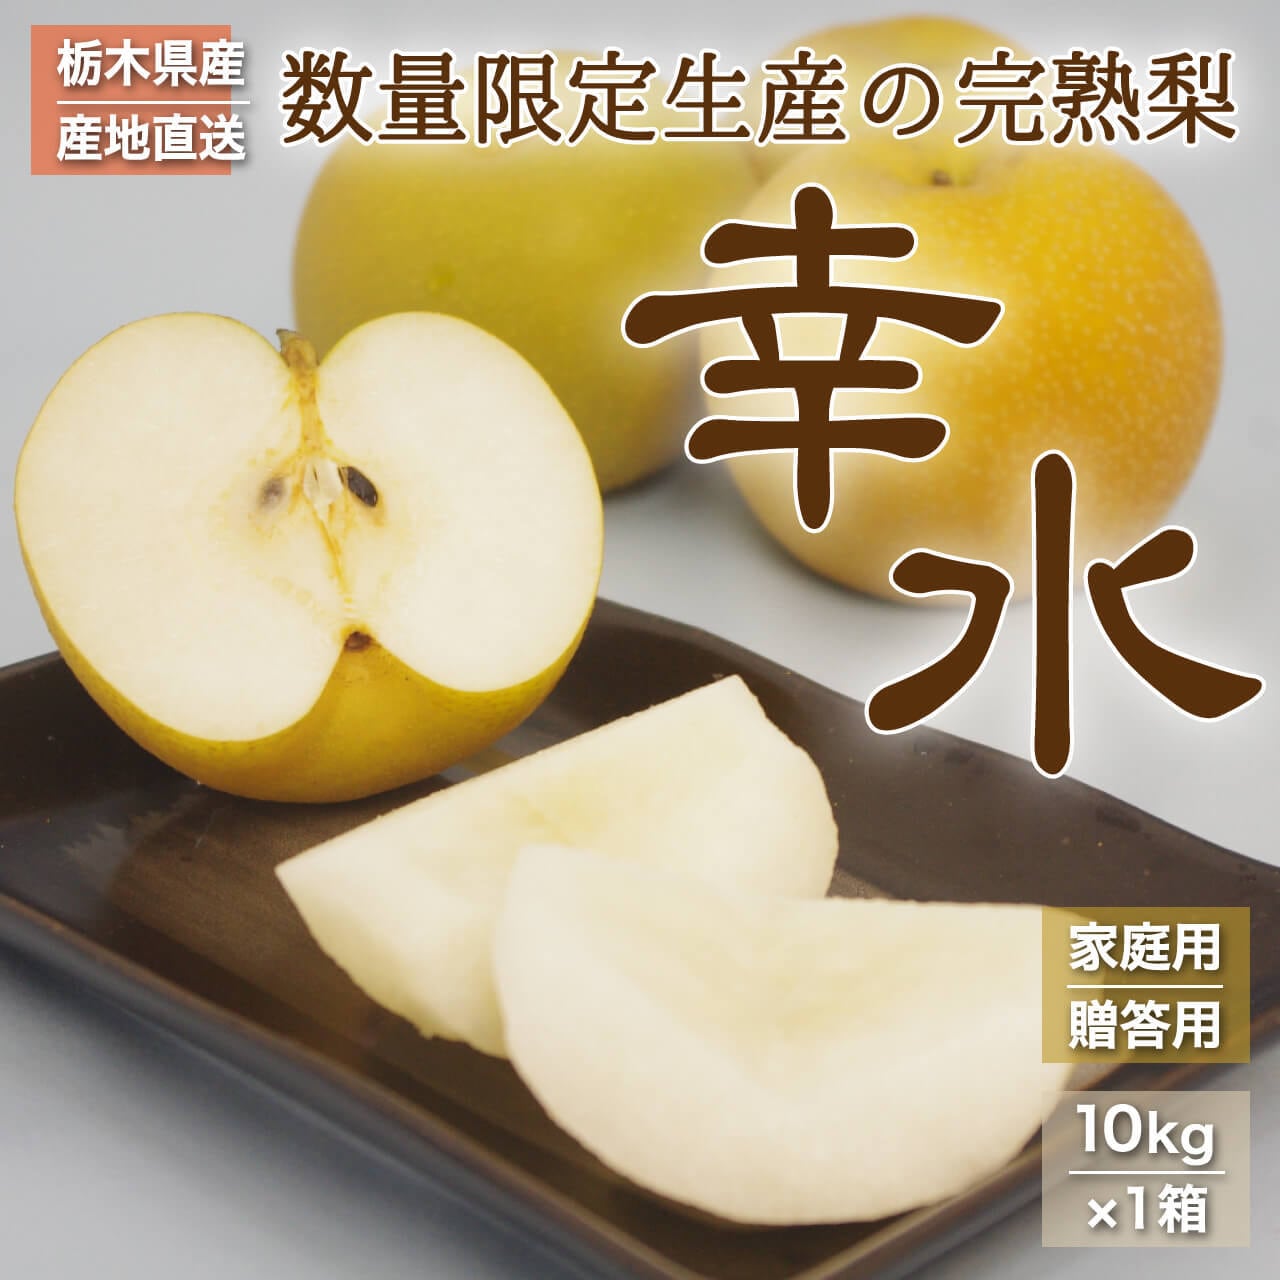 りんご 洋梨 プルーンNo.5限定★家庭用6種のフルーツセット★箱込み3キロ以上